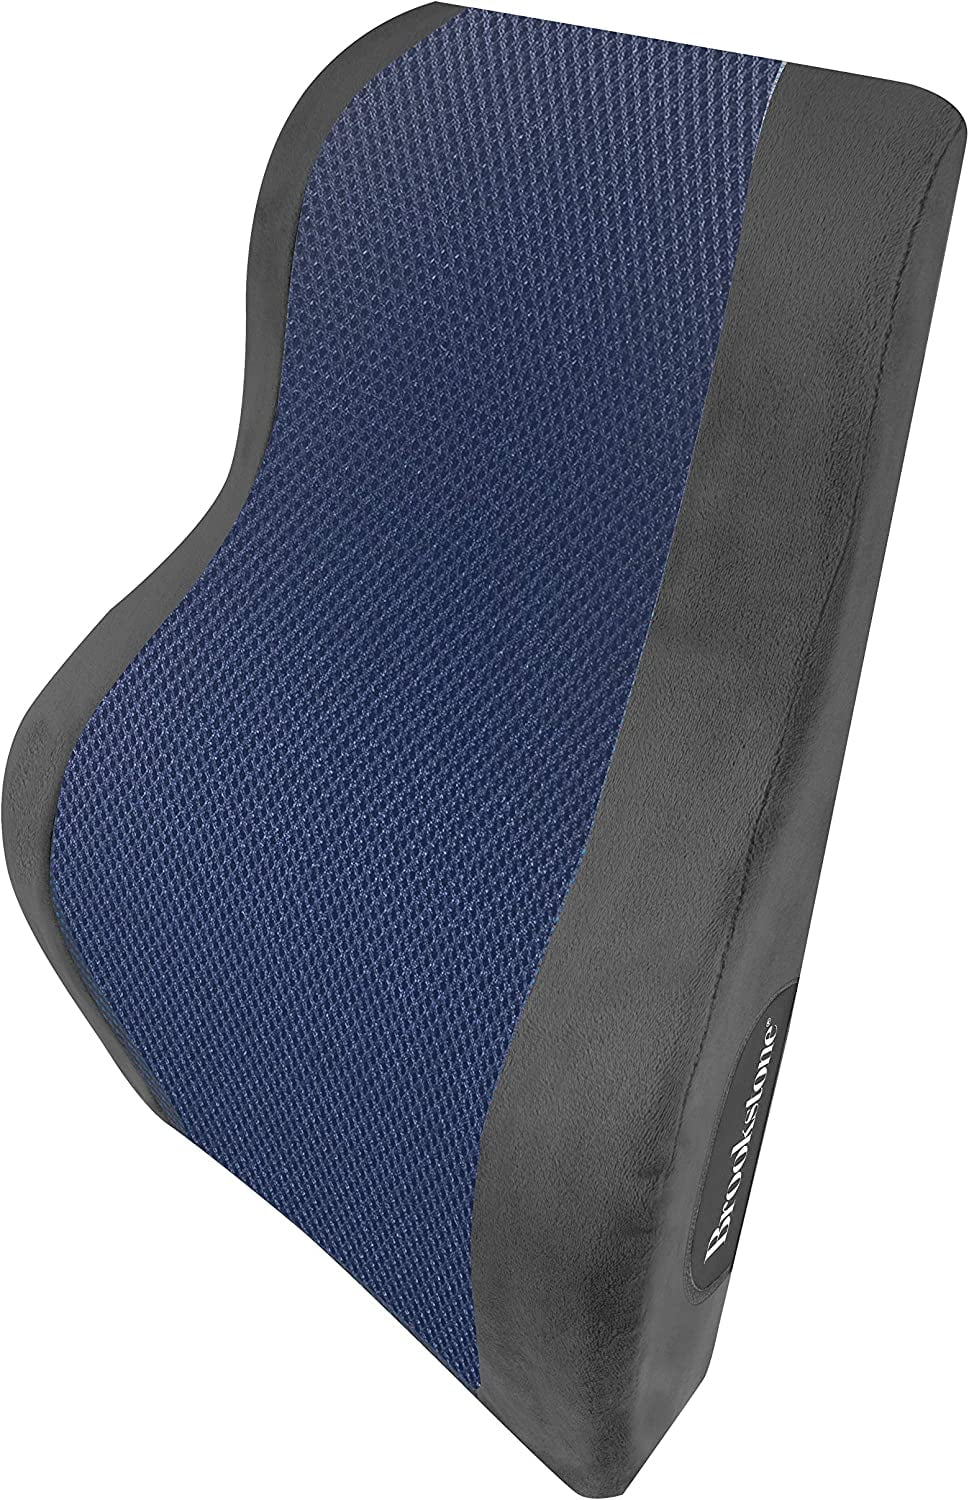 Samsonite Memory Foam Car Seat Lumbar Support Cushion: Black